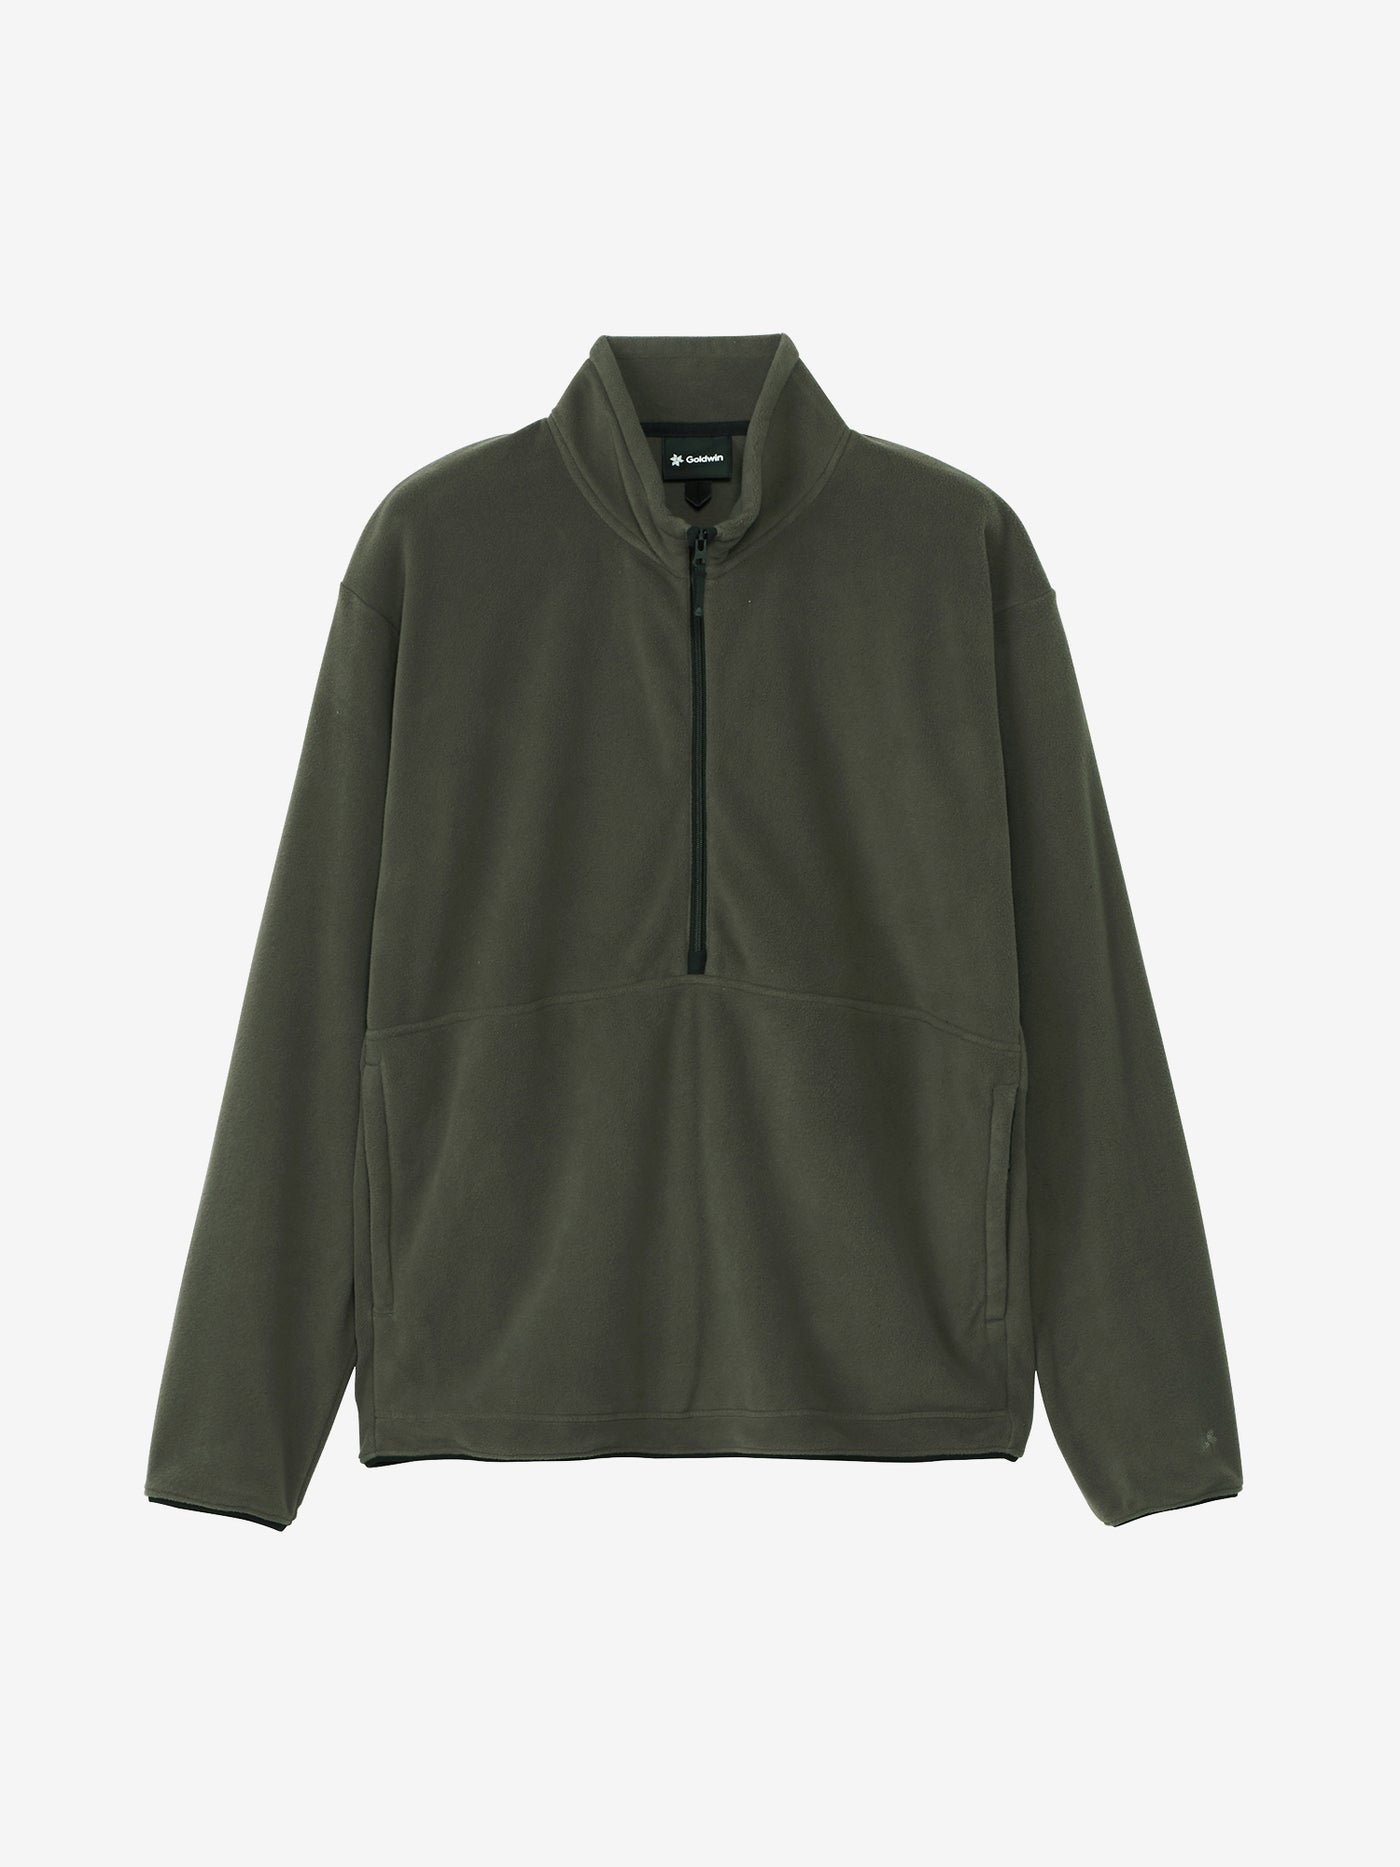 POLARTEC Micro Fleece Half Zip Pullover – Goldwin America